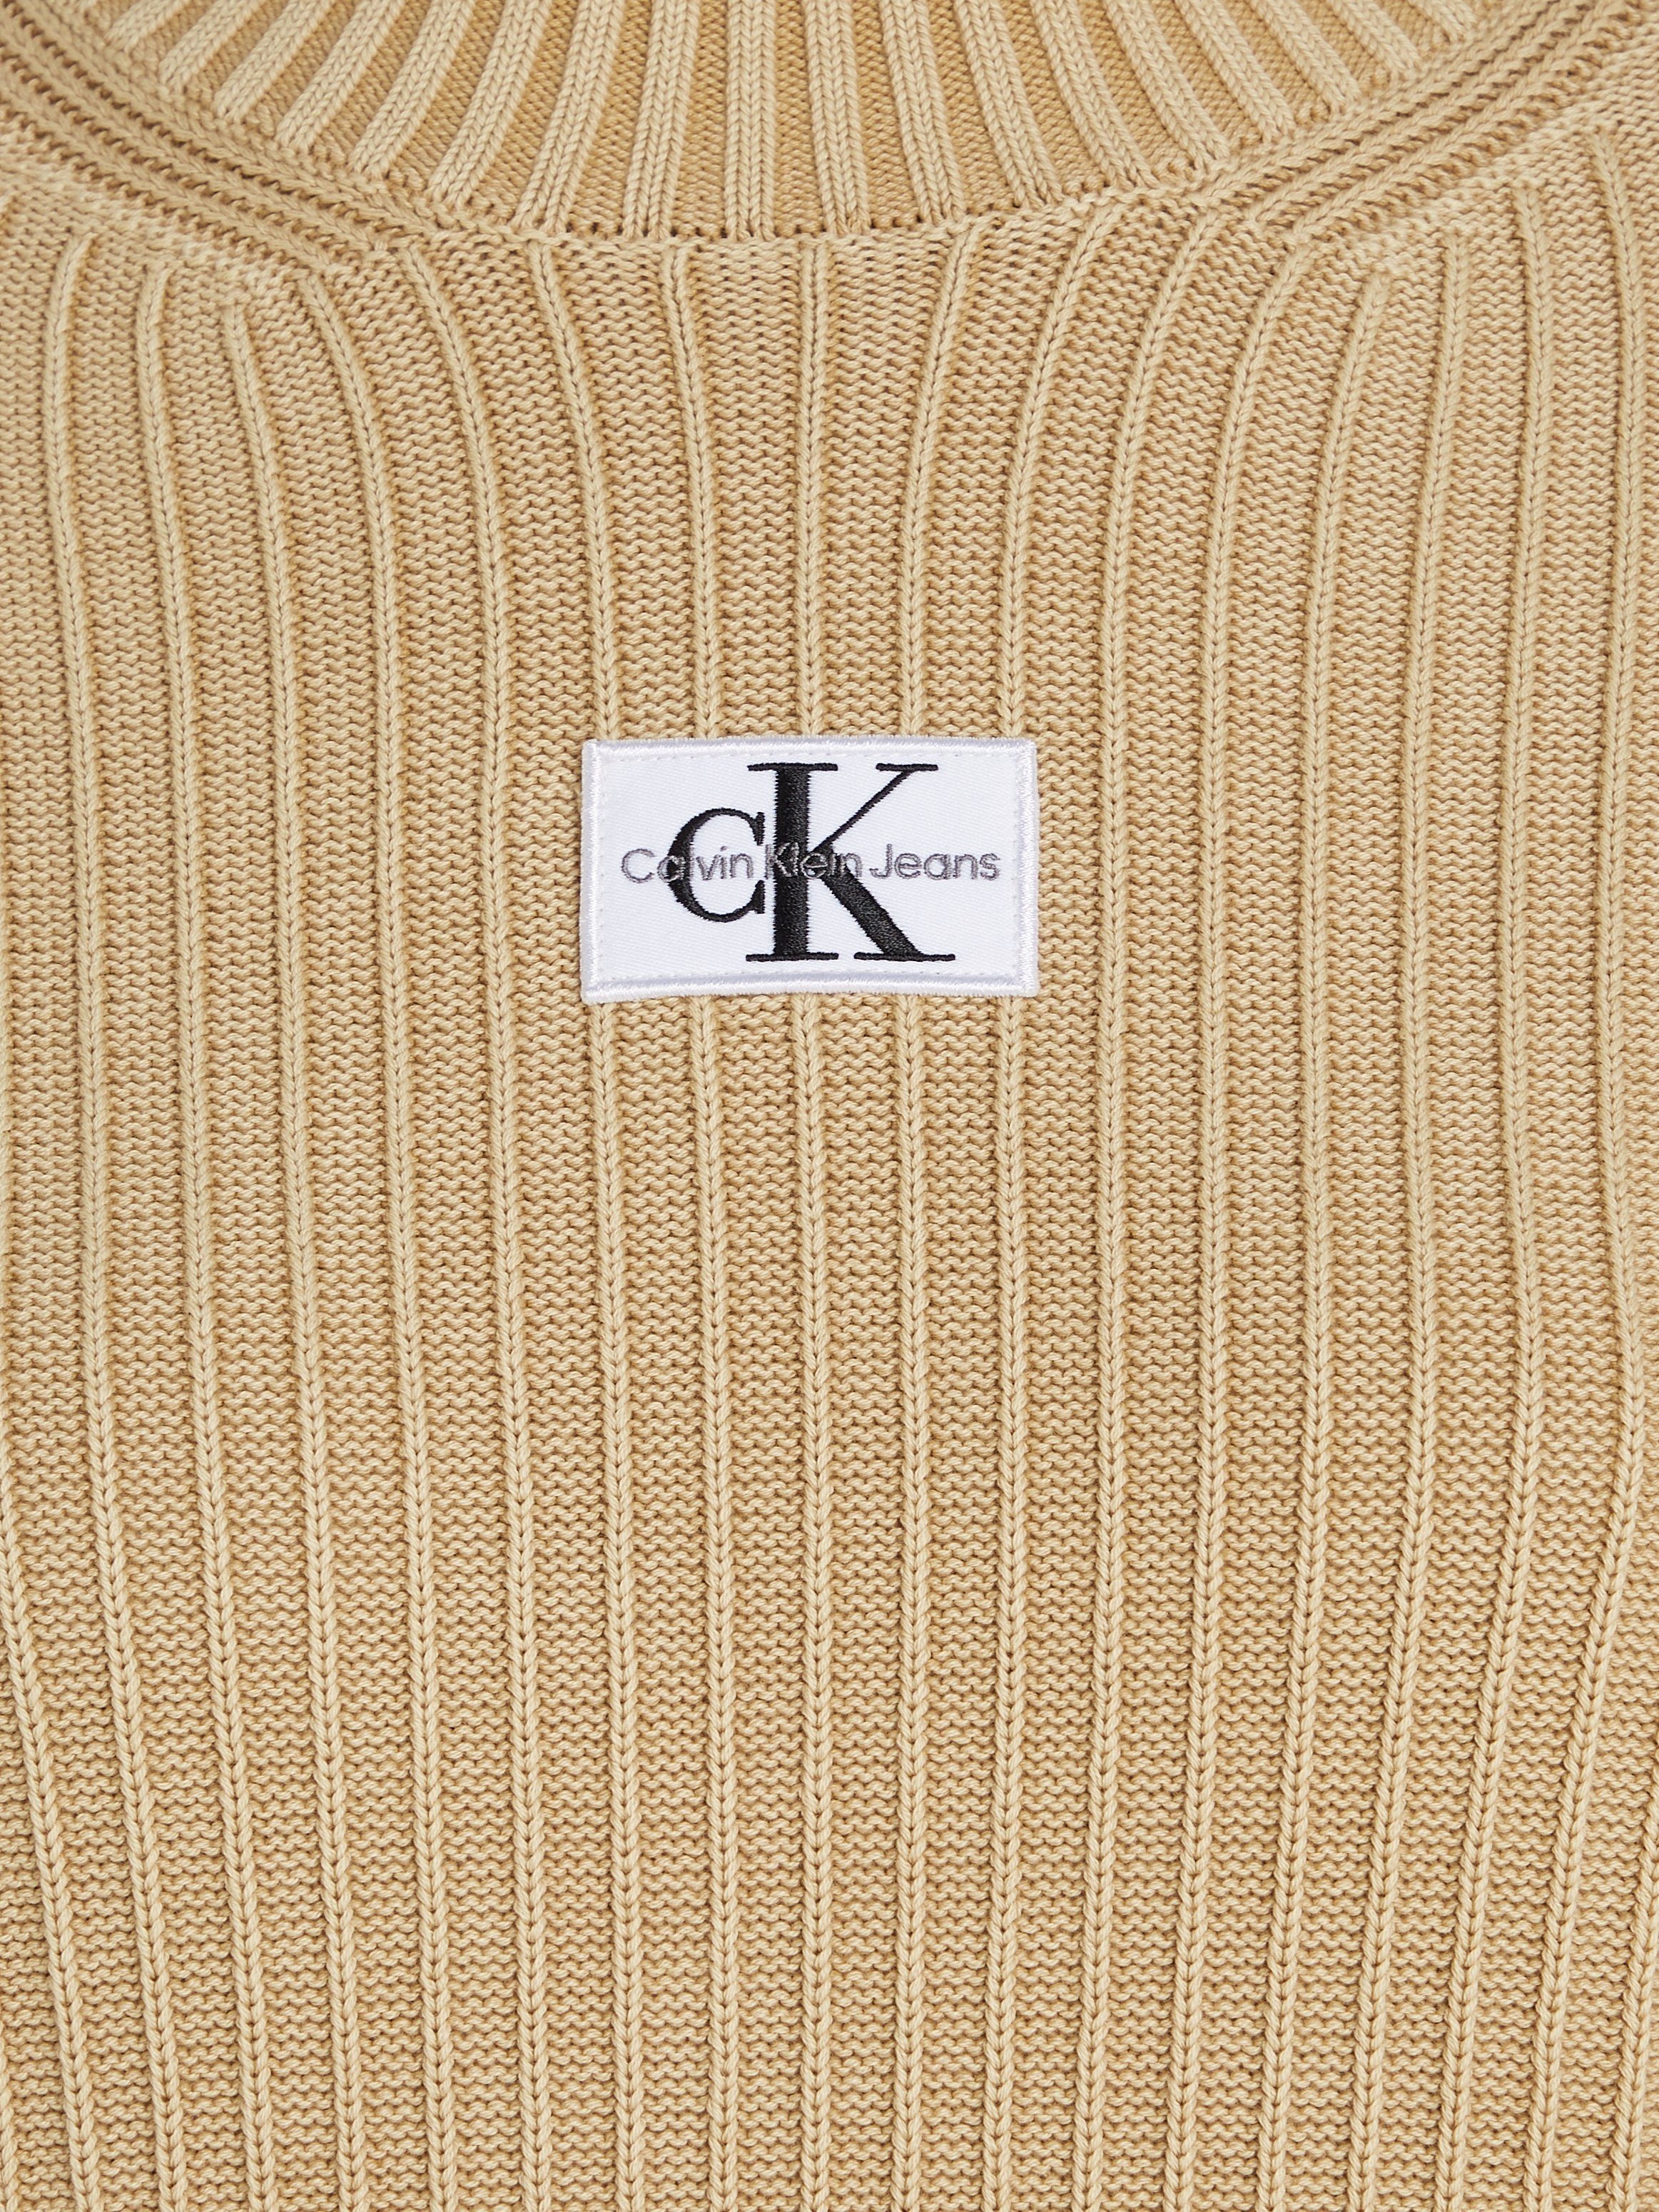 Calvin Klein Jeans SWEATER Strickkleid DRESS WASHED MONOLOGO Sand Warm